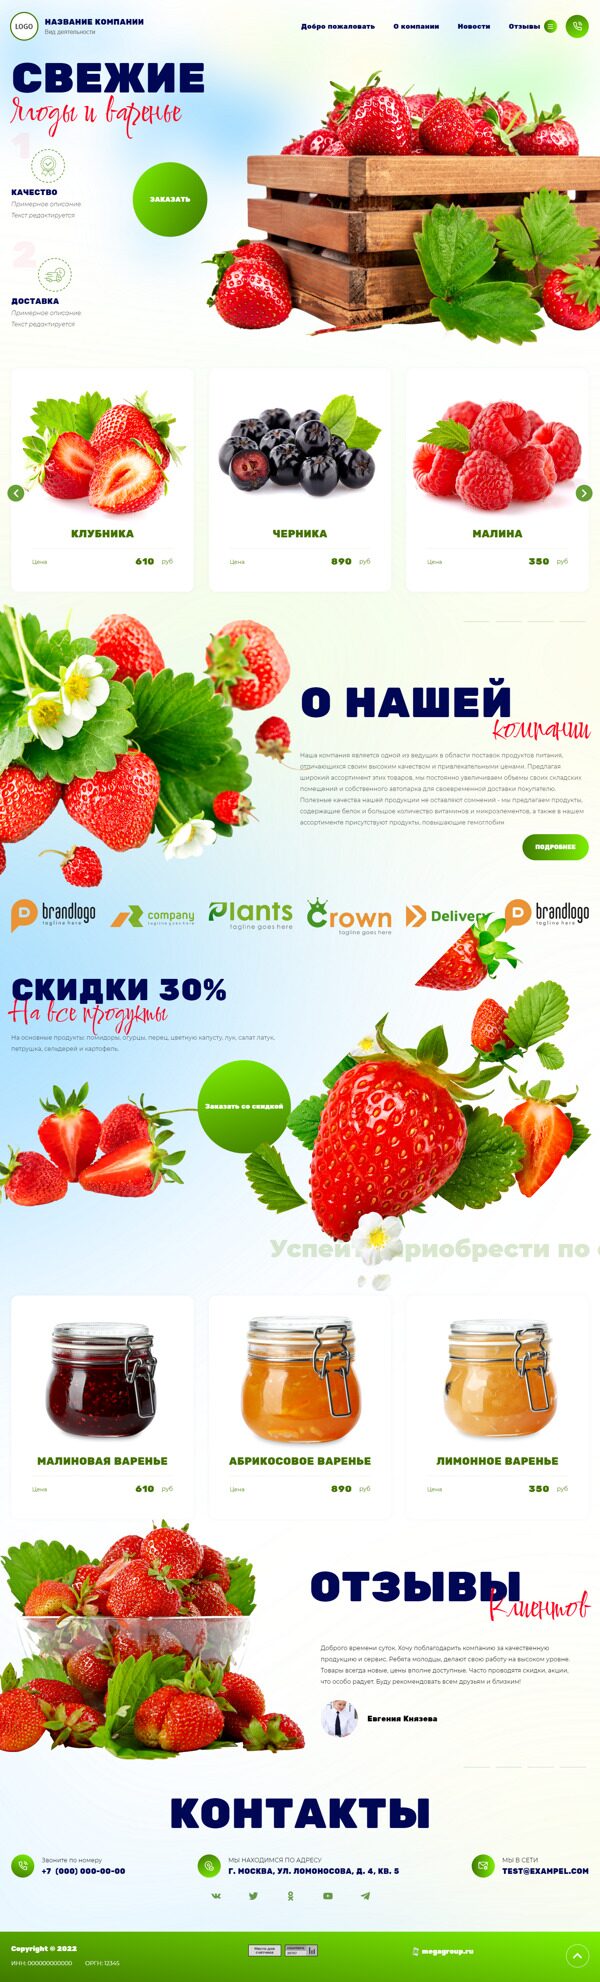 Готовый Сайт-Бизнес № 4800781 - Сайт для продажи ягод (Десктопная версия)